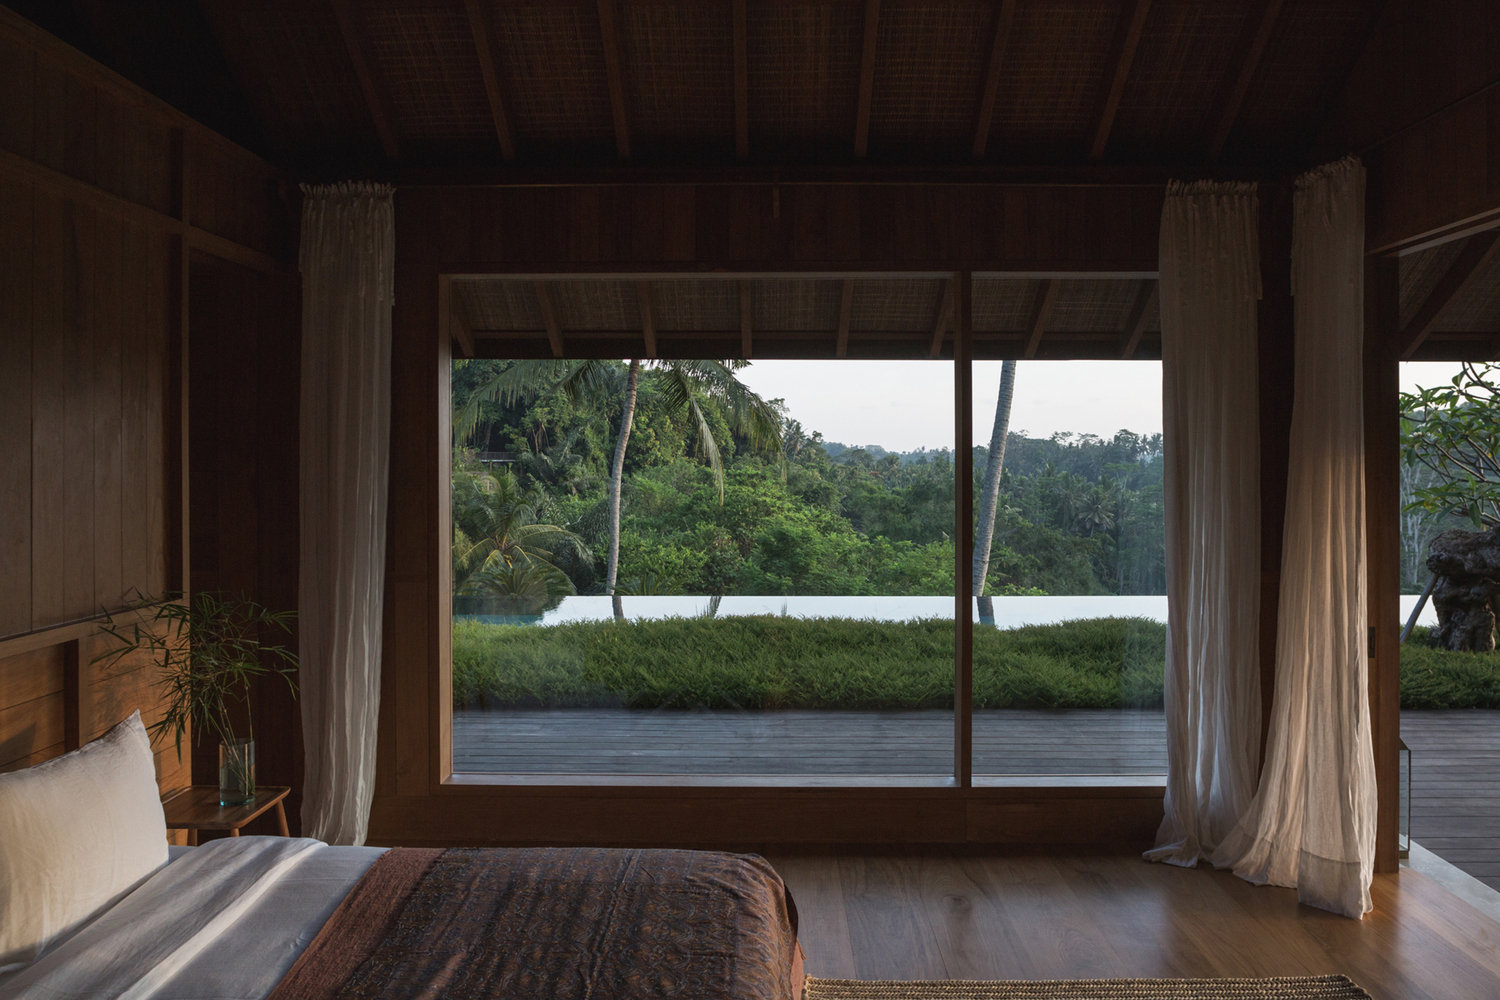 hình ảnh phòng ngủ với cửa kính lớn, rèm màu trắng, hướng nhìn ra khung cảnh núi rừng